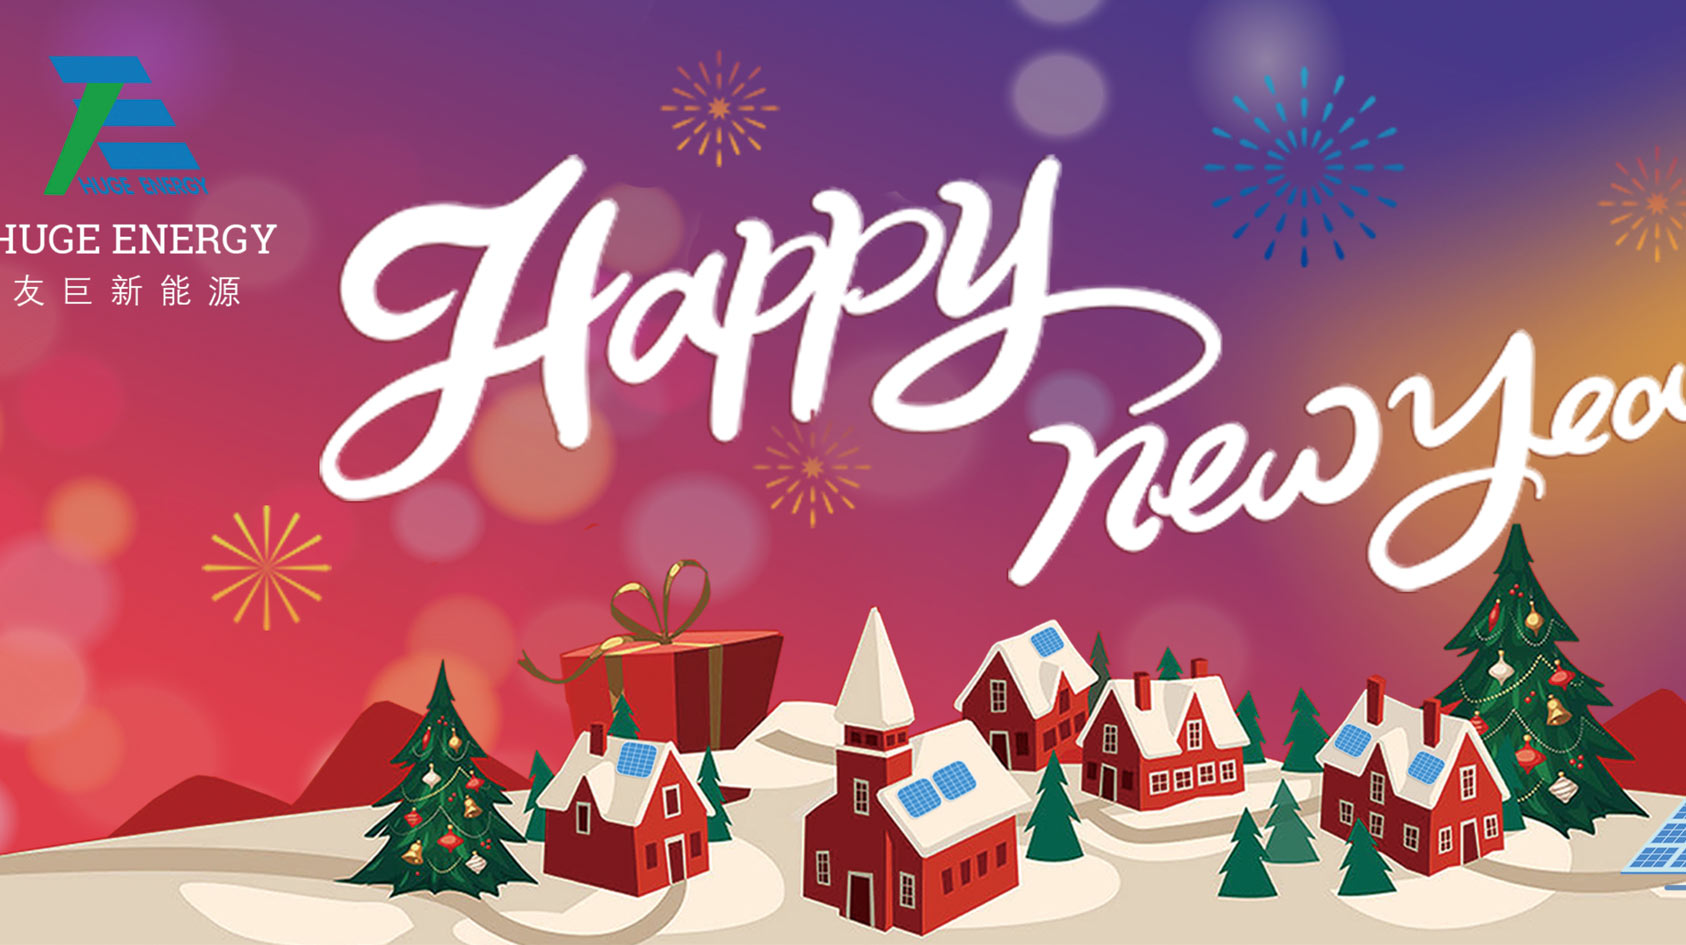 ¡Al comienzo del nuevo año, Huge Energy les desea un feliz año nuevo!